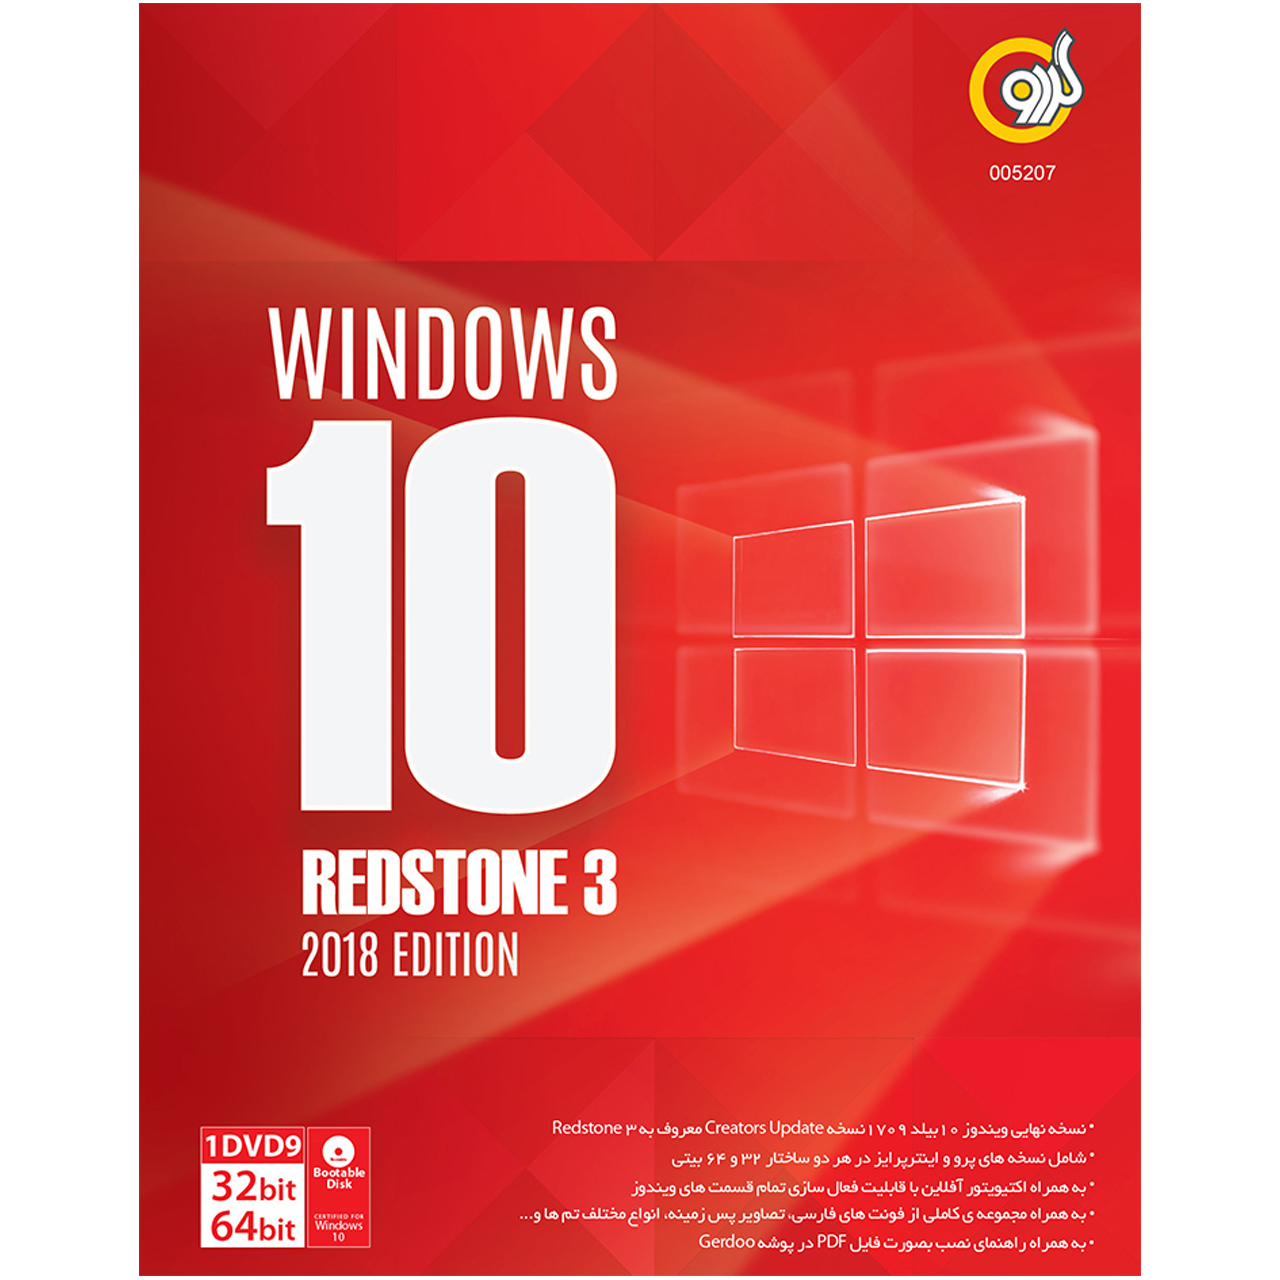 سیستم عامل گردو Windows 10 Redstone 3 2018 Edition